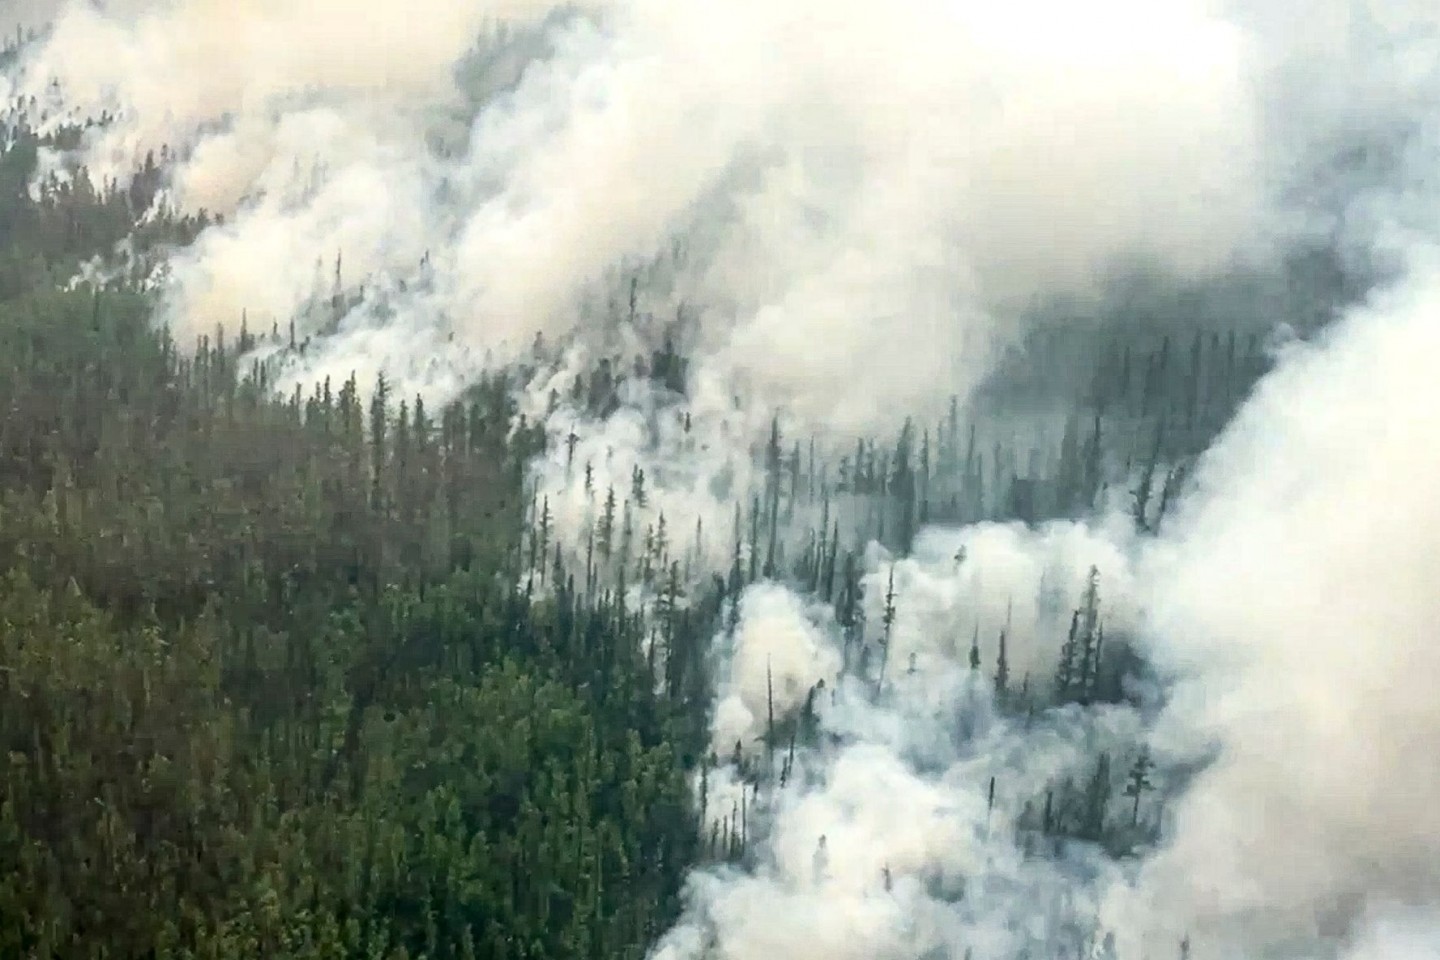 Jedes Jahr stehen in Russlands Wäldern riesige Baumbestände in Flammen.